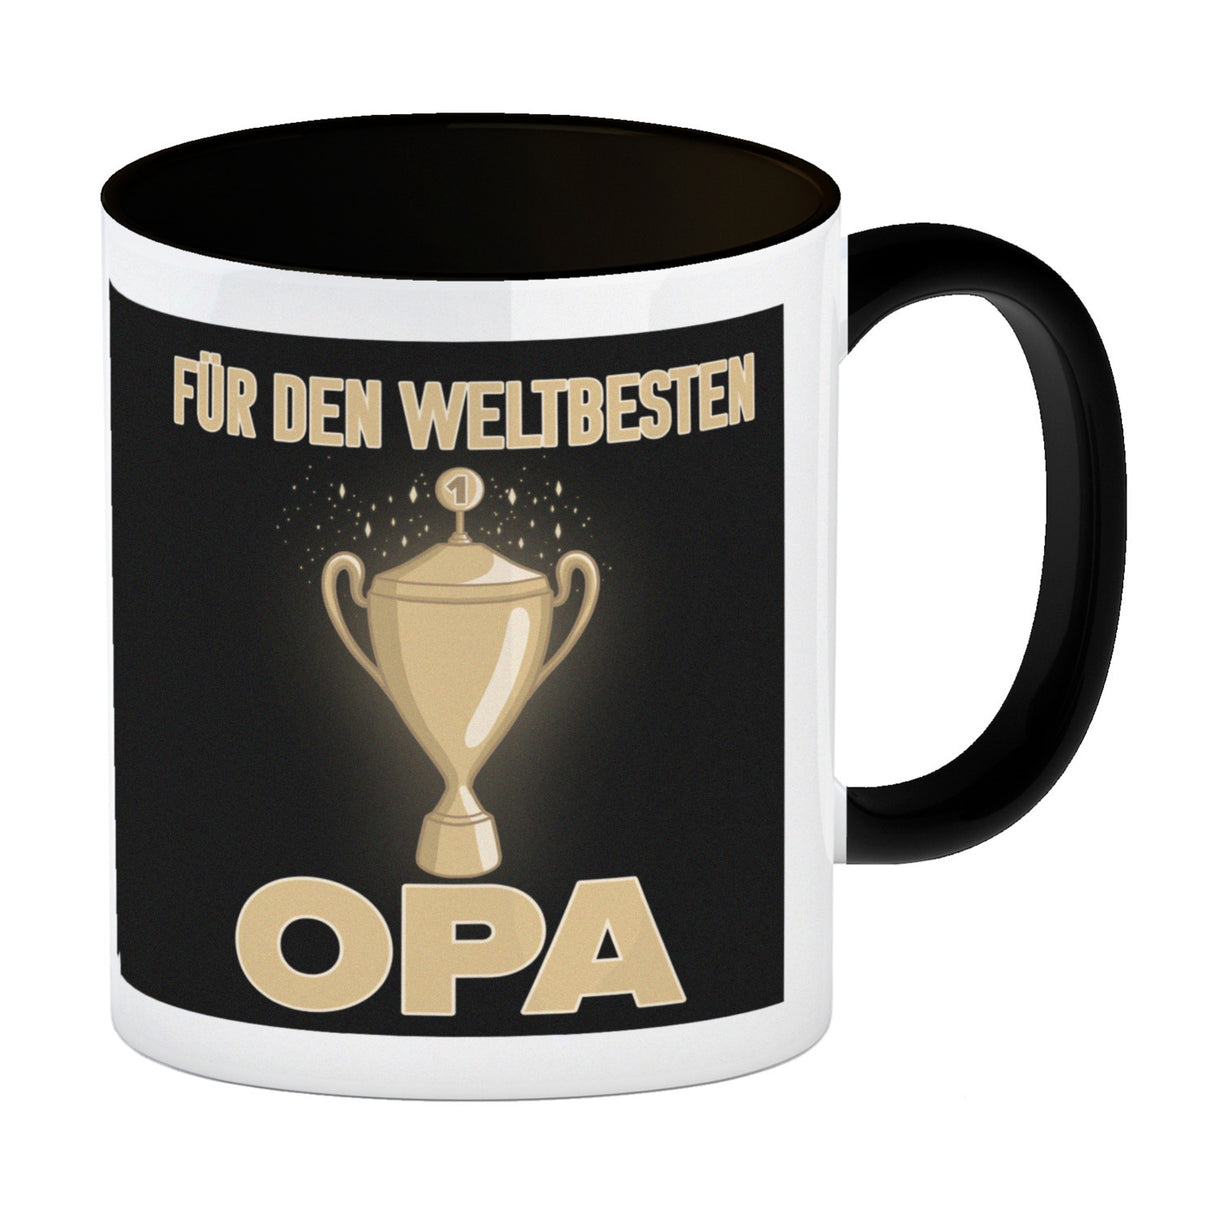 Für den weltbesten Opa Kaffeebecher mit Pokal